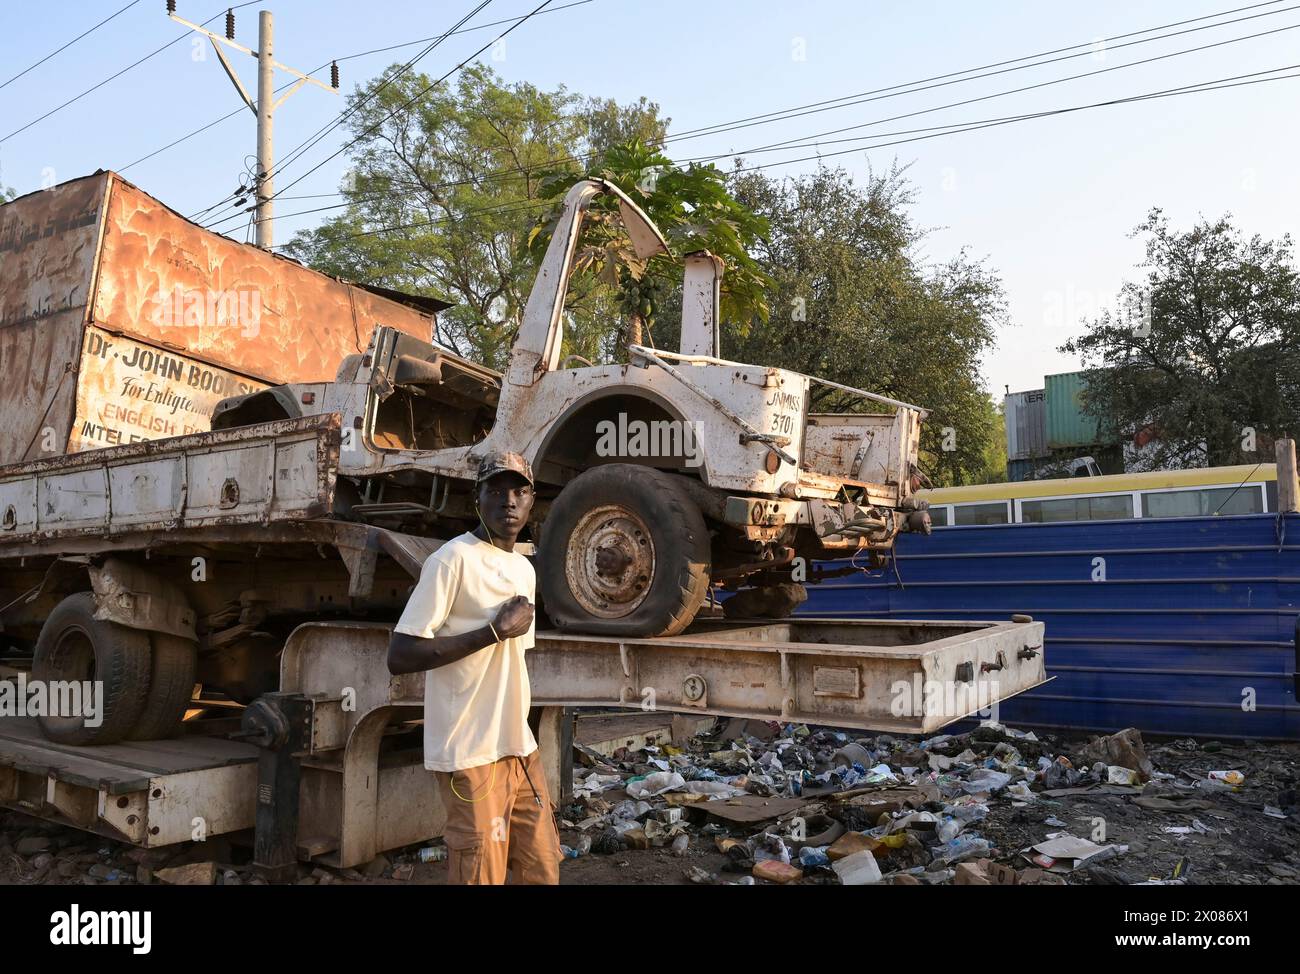 SÜDSUDAN, Hauptstadt Juba, Schrottwagen und Müll auf der Straße, Jeep der UN-Organisation UNMISS / SÜDSUDAN, Hauptstadt Juba, Straßenszene, Schrotthandel Stockfoto